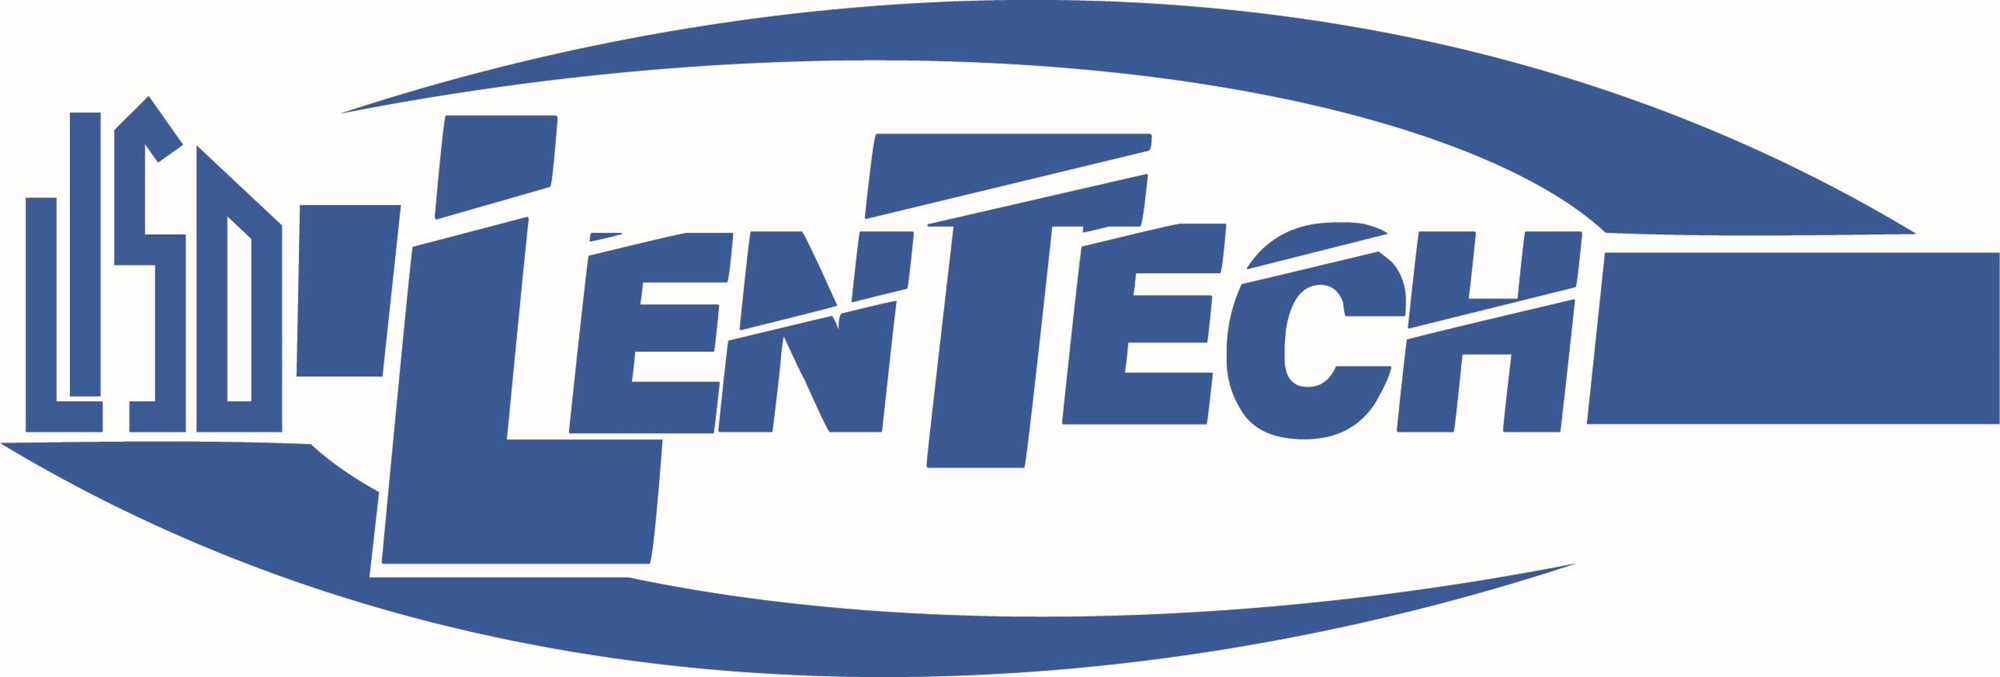 LISD LenTech logo